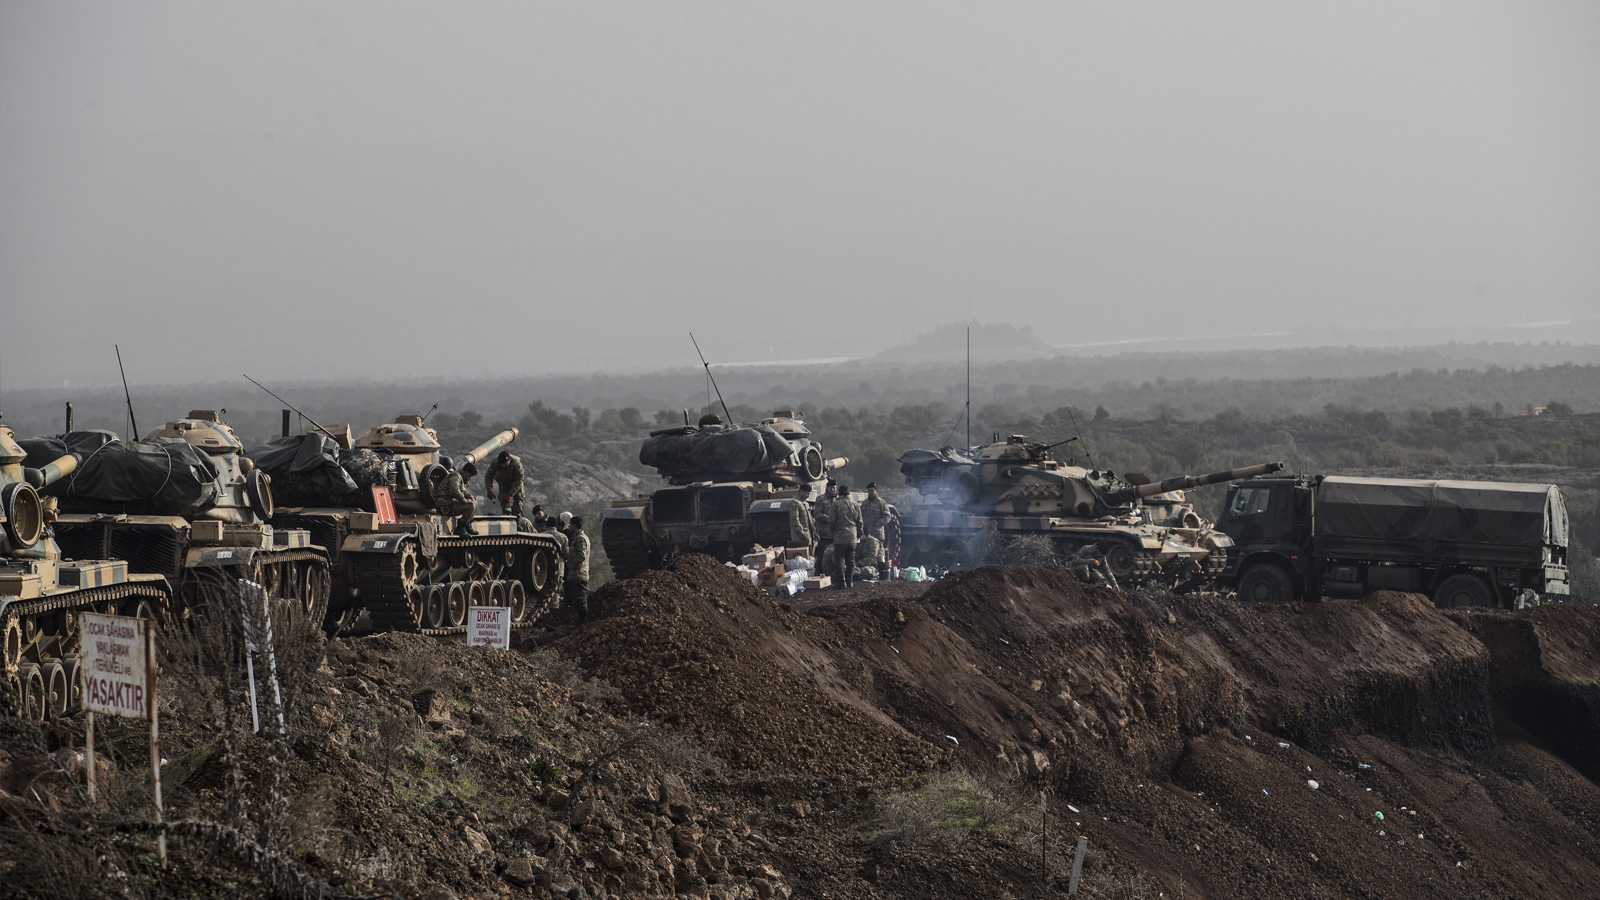 آليات عسكرية تركية على الحدود السورية قرب منطقة عفرين (الأوروبية)